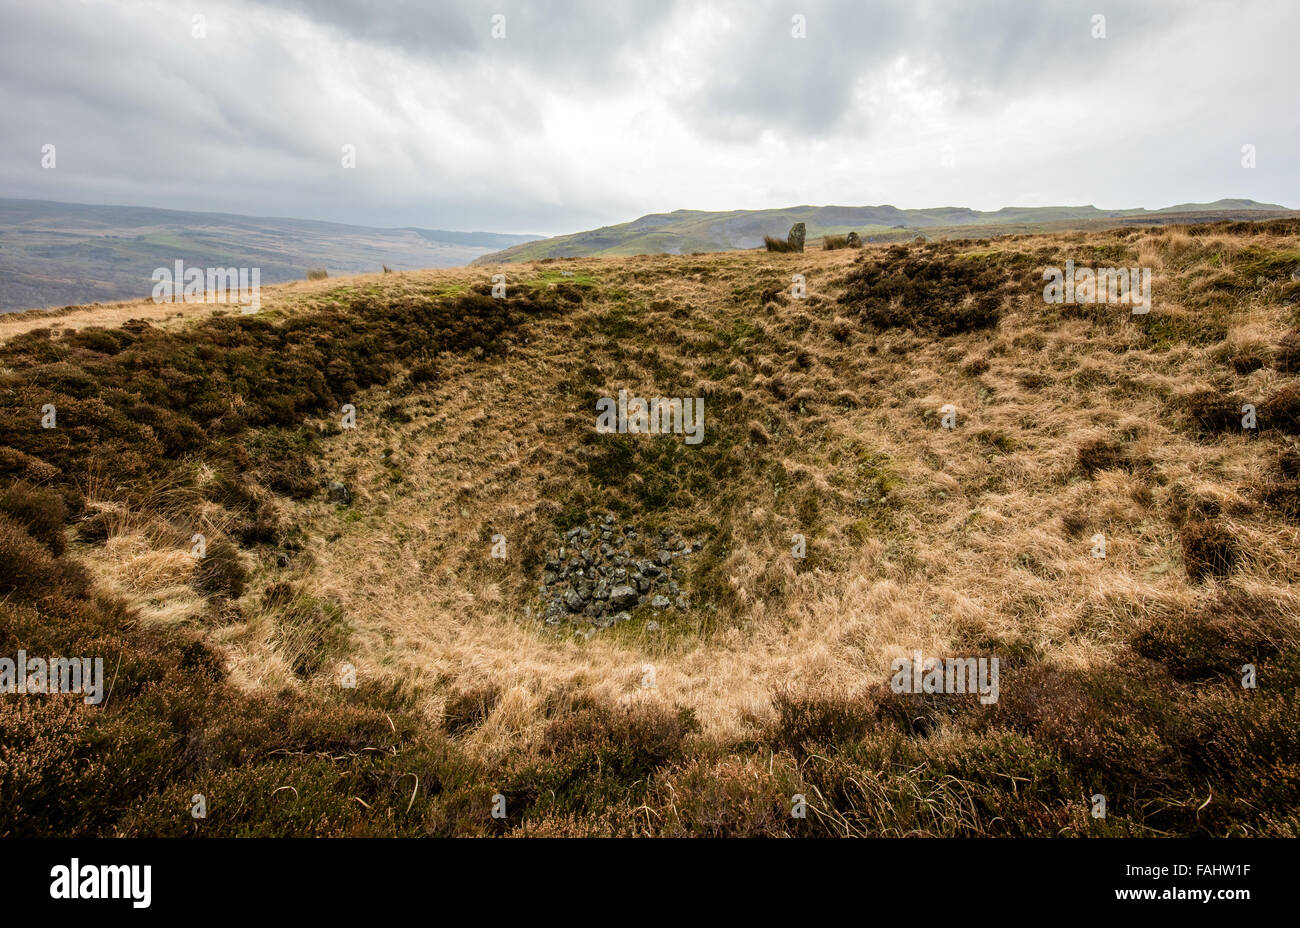 Spricht, dass Maen Stein Zeile durch den Rand eines riesigen schütteln Loch oben Glyntawe in Swansea Tal Brecon Beacons South Wales Großbritannien thront Stockfoto